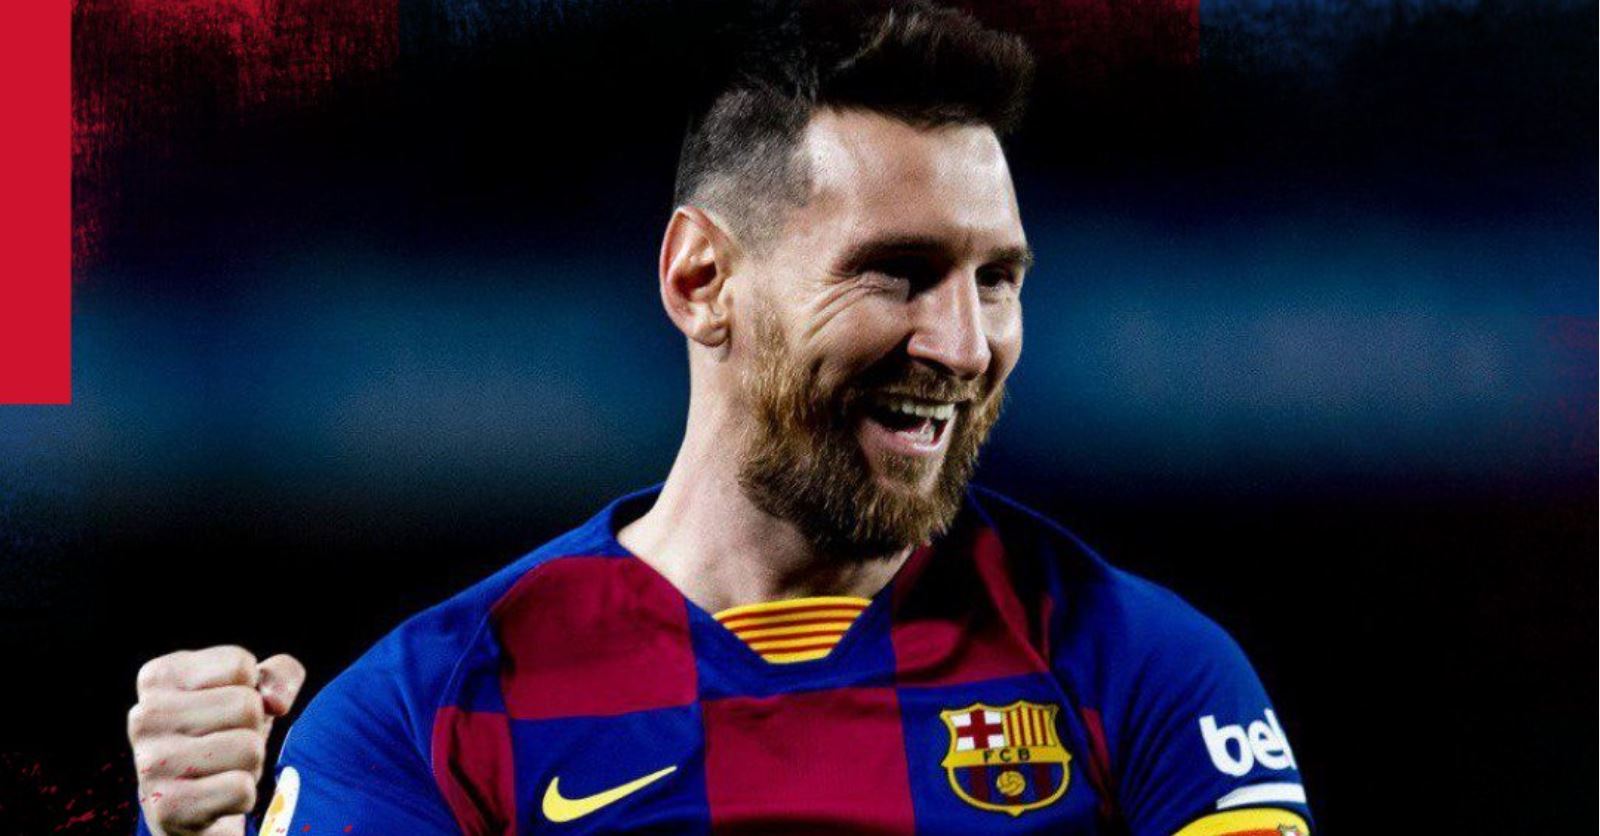 Ballon d’Or: la master class du Metropolitano montre que Messi reste au-dessus de la moyenne